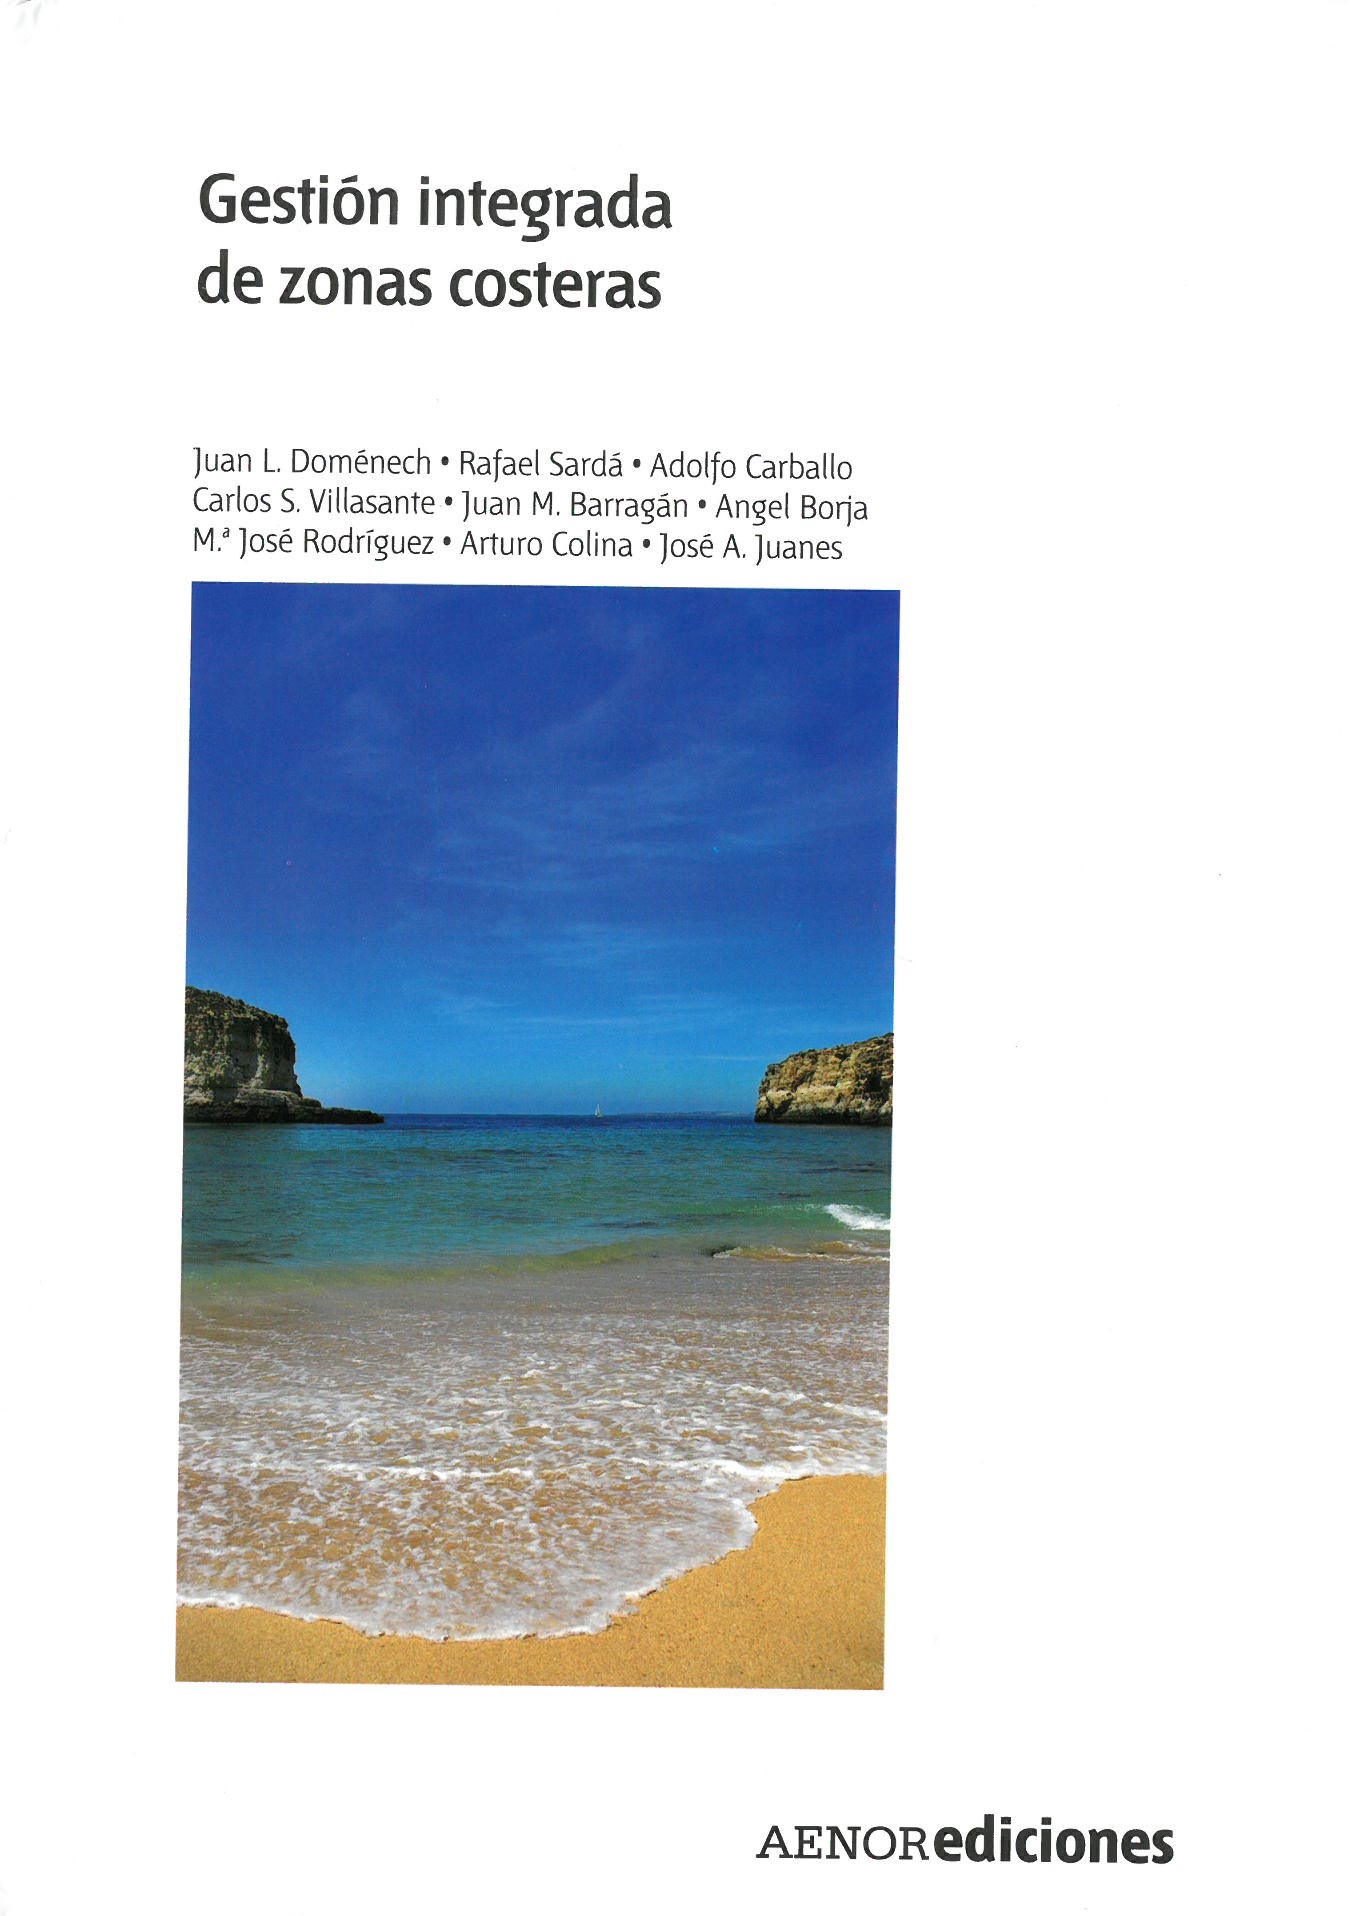 Imagen de portada del libro Gestión integrada de zonas costeras